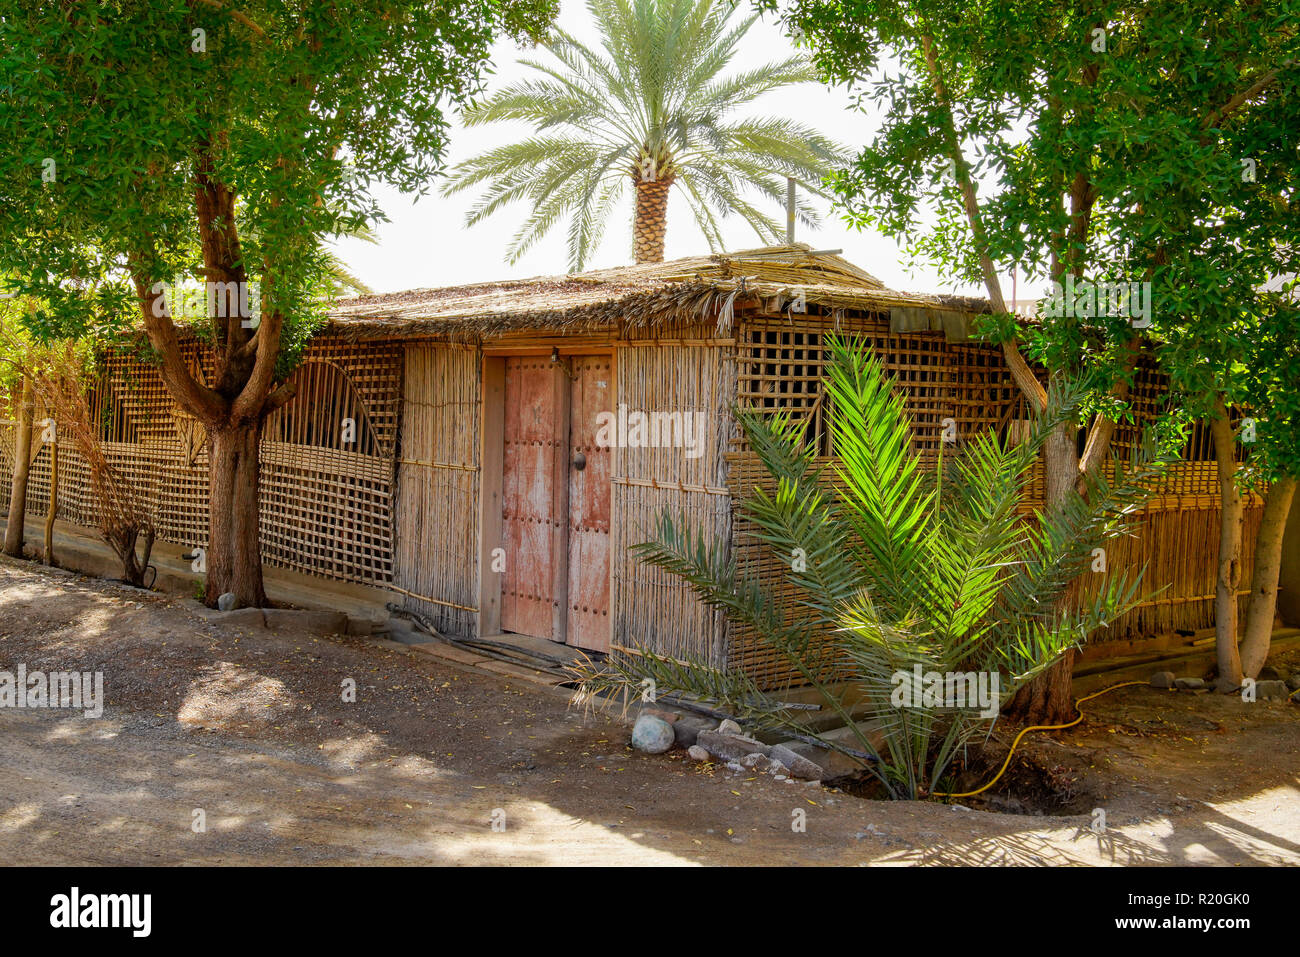 Traditionellen omanischen Dorf in Wadi Bani in der Nähe von Bahla. Oman. Fassade traditionellen arabischen home Build von Palm Tree Branches. Oman. Stockfoto